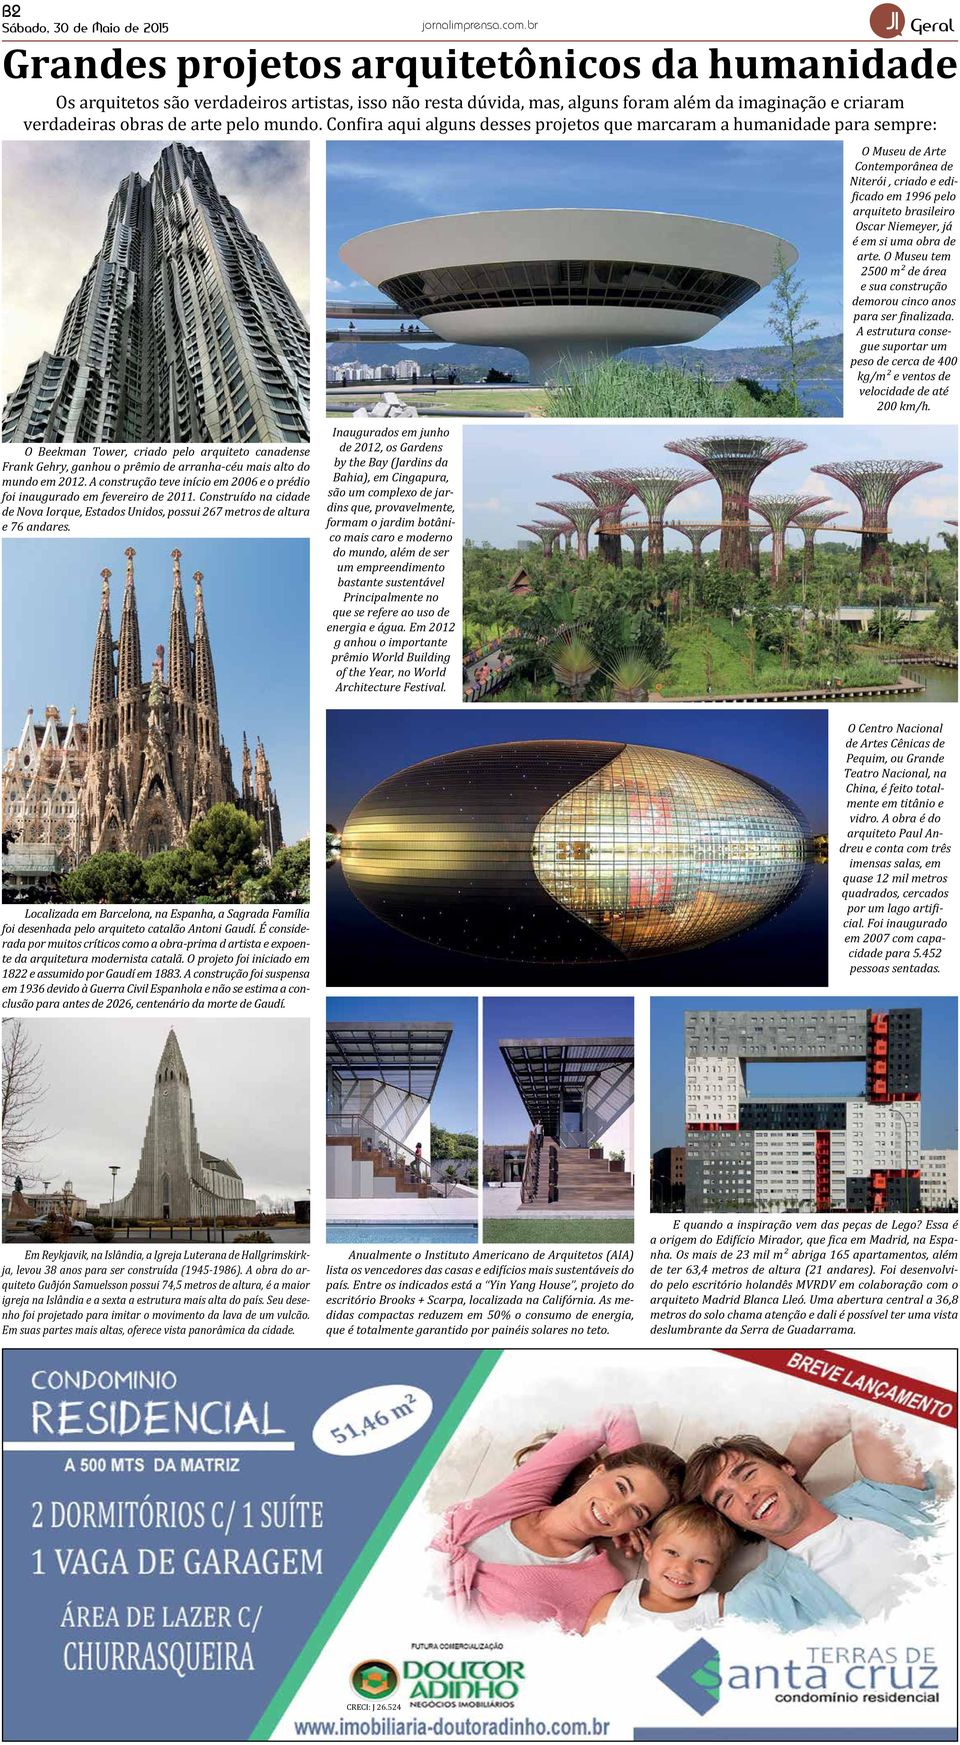 Confira aqui alguns desses projetos que marcaram a humanidade para sempre: O Museu de Arte Contemporânea de Niterói, criado e edificado em 1996 pelo arquiteto brasileiro Oscar Niemeyer, já é em si